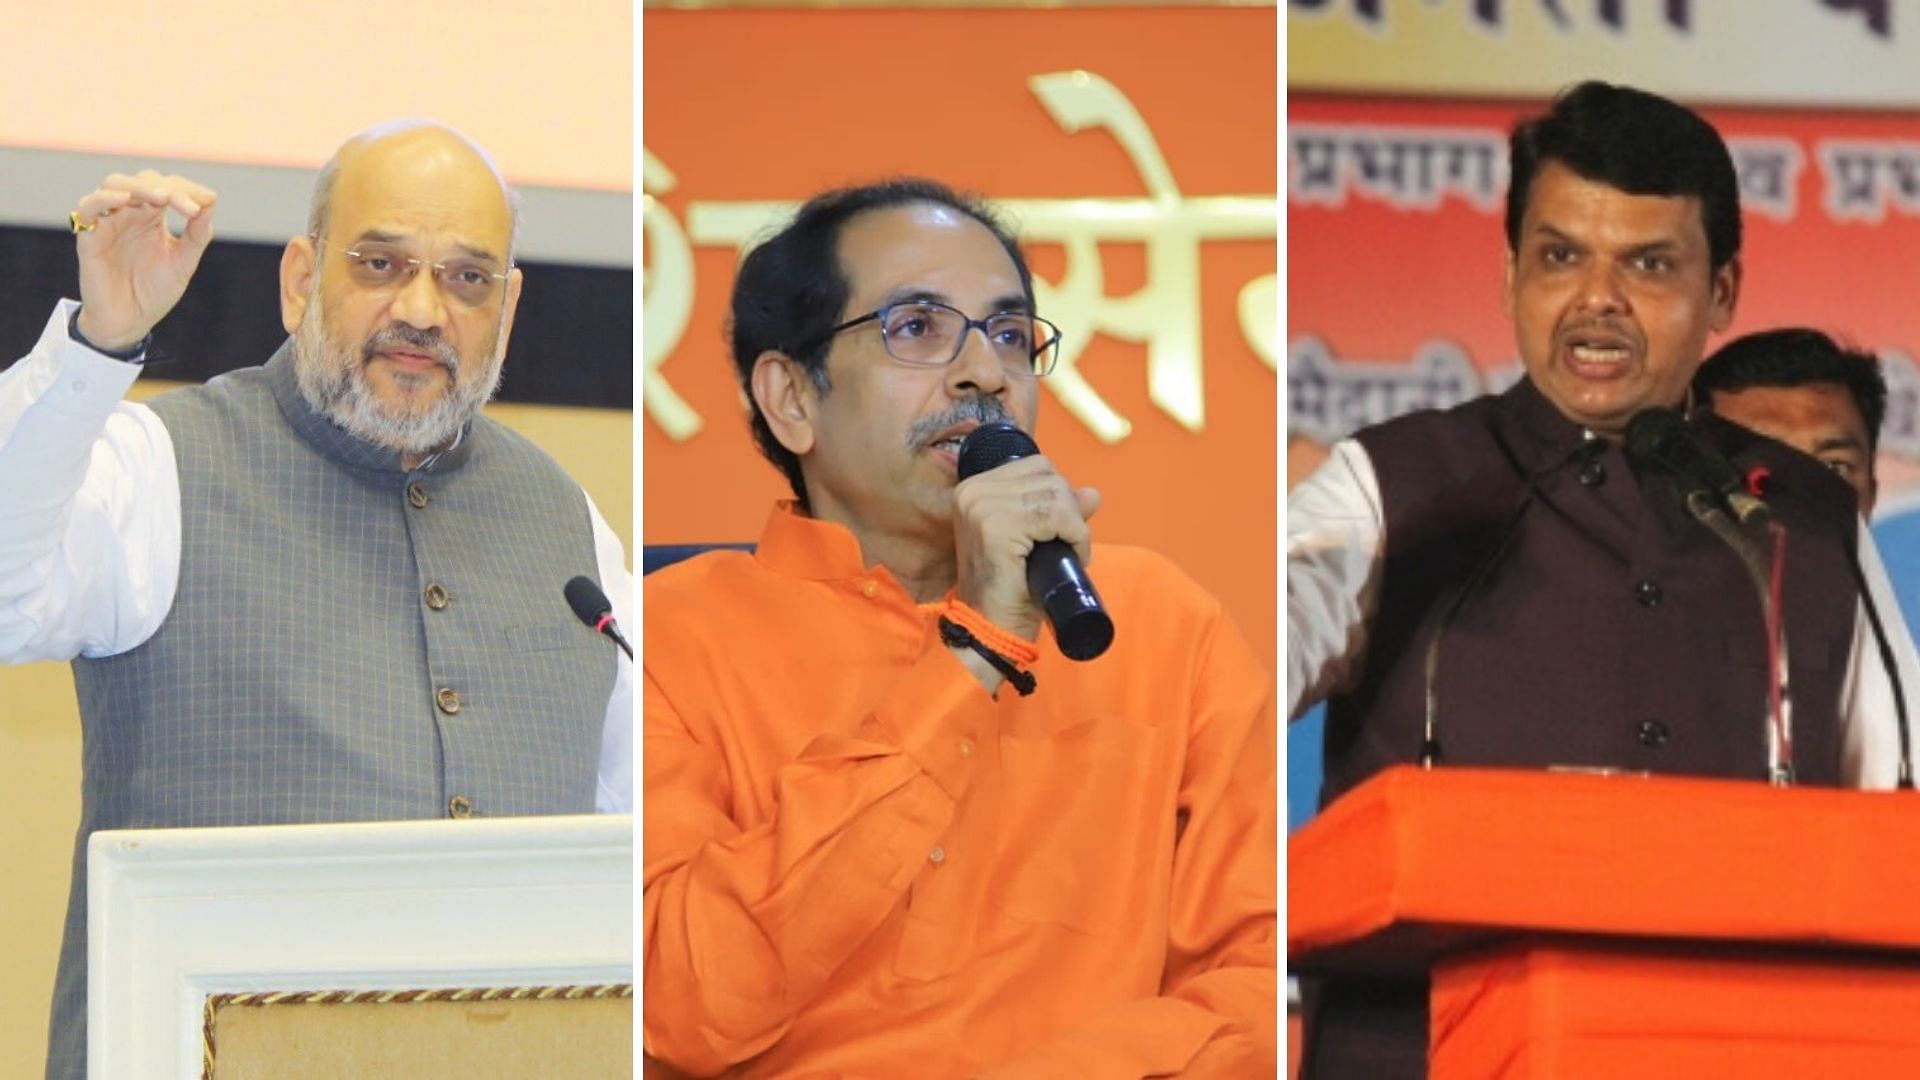 From left to right: BJP President Amit Shah, Shiv Sena Chief Uddhav Thackeray and Maharashtra Chief Minister Devendra Fadnavis.